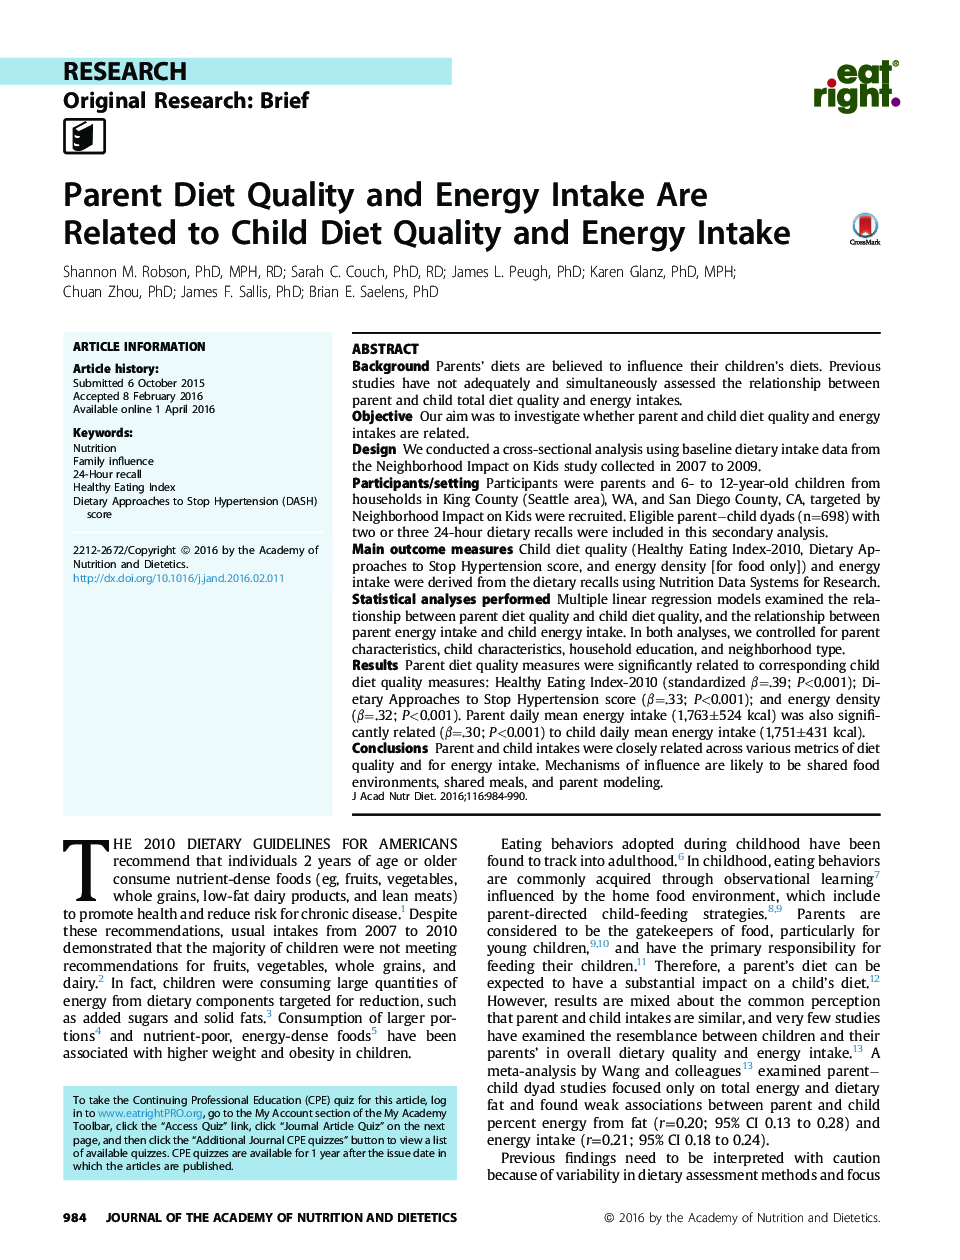 کیفیت غذای والدین و مصرف انرژی مربوط به کیفیت غذای کودک و مصرف انرژی است